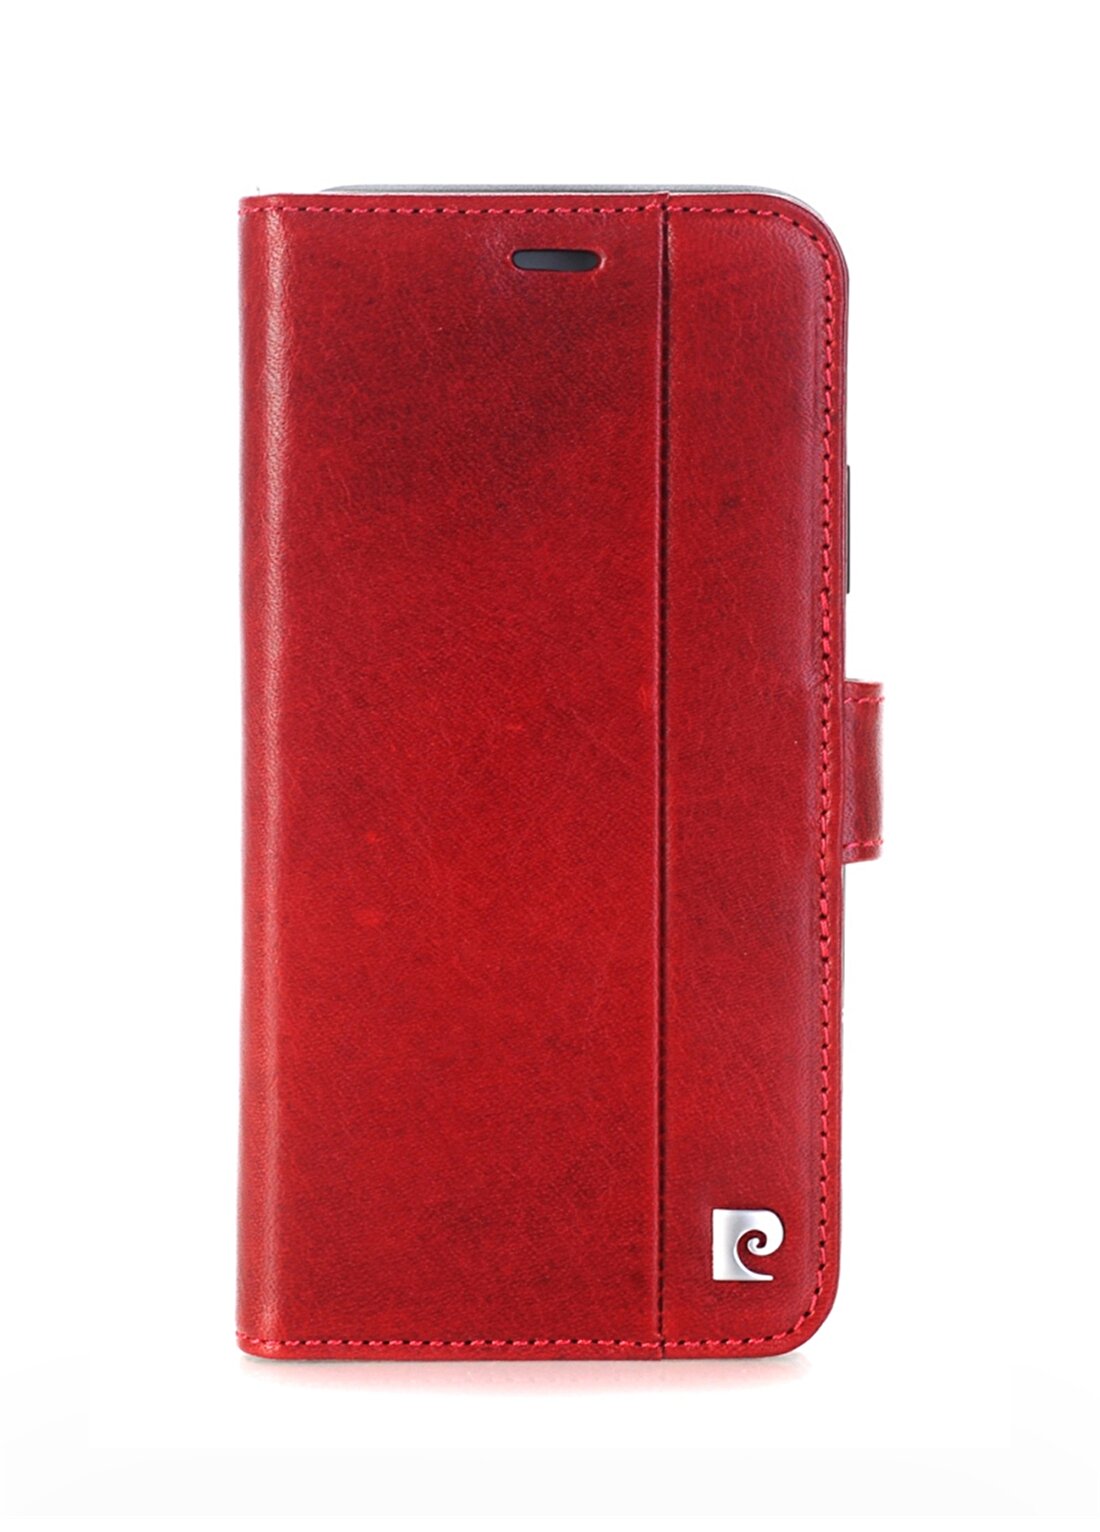 Pierre Cardin PCL-P05 Iphone X - XS (5.8) Bordo Deri Kapaklı Kılıf Telefon Aksesuarı